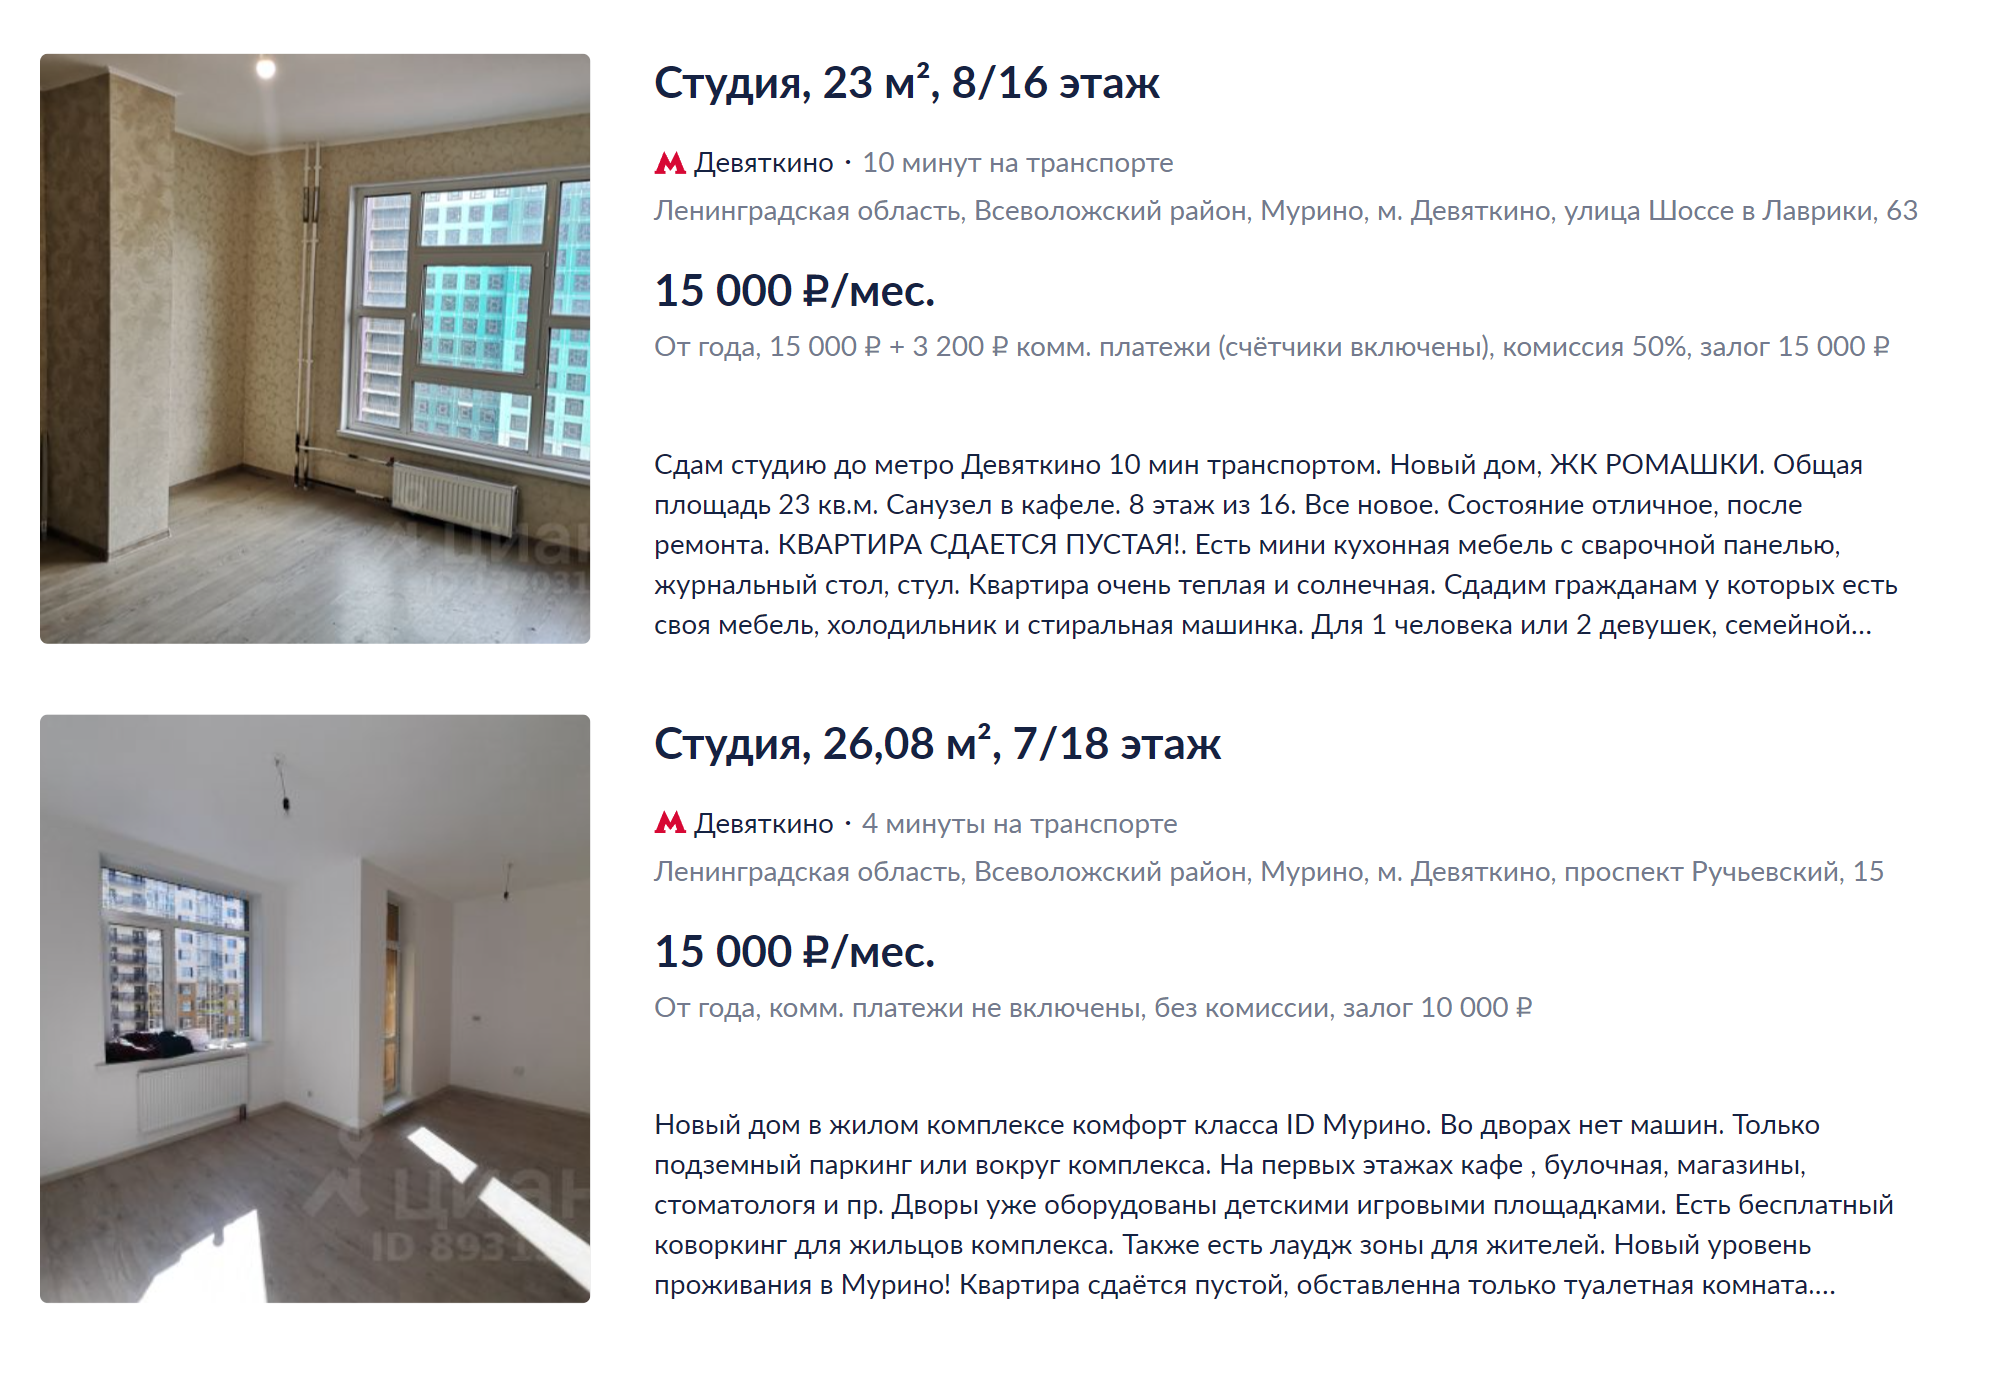 Снять студию дешевле чем за 16 000 ₽ в месяц можно только без мебели. Источник: cian.ru